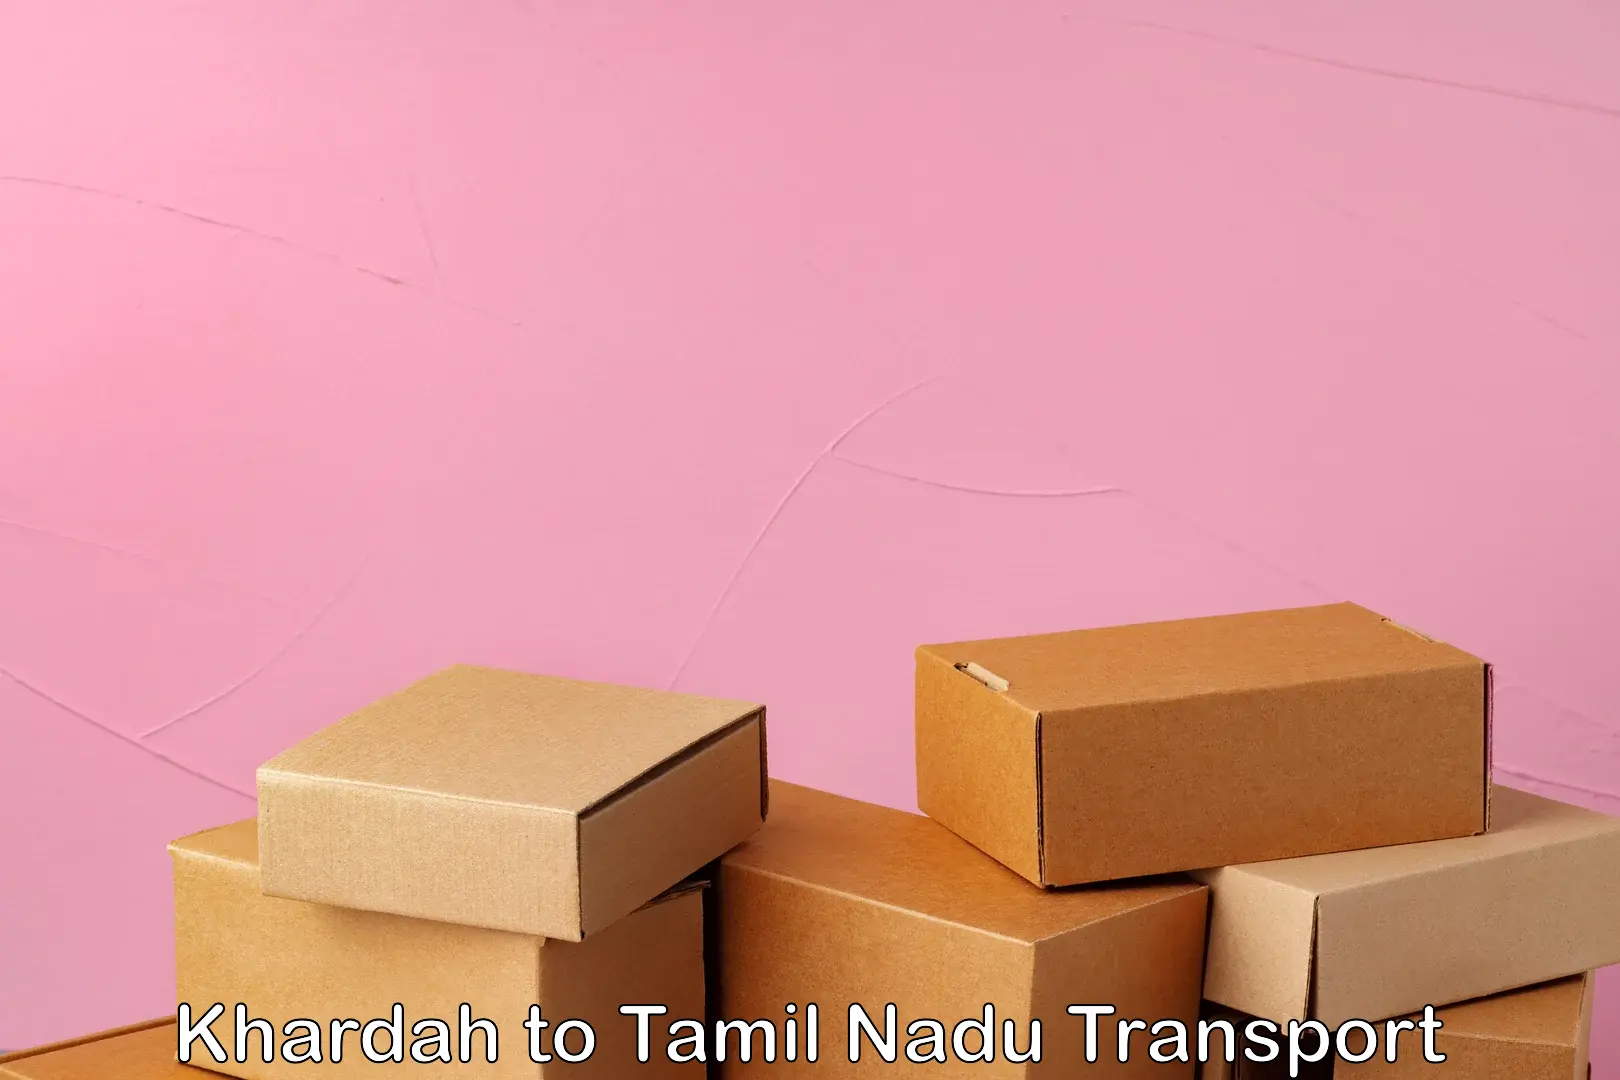 Shipping partner Khardah to Tamil Nadu